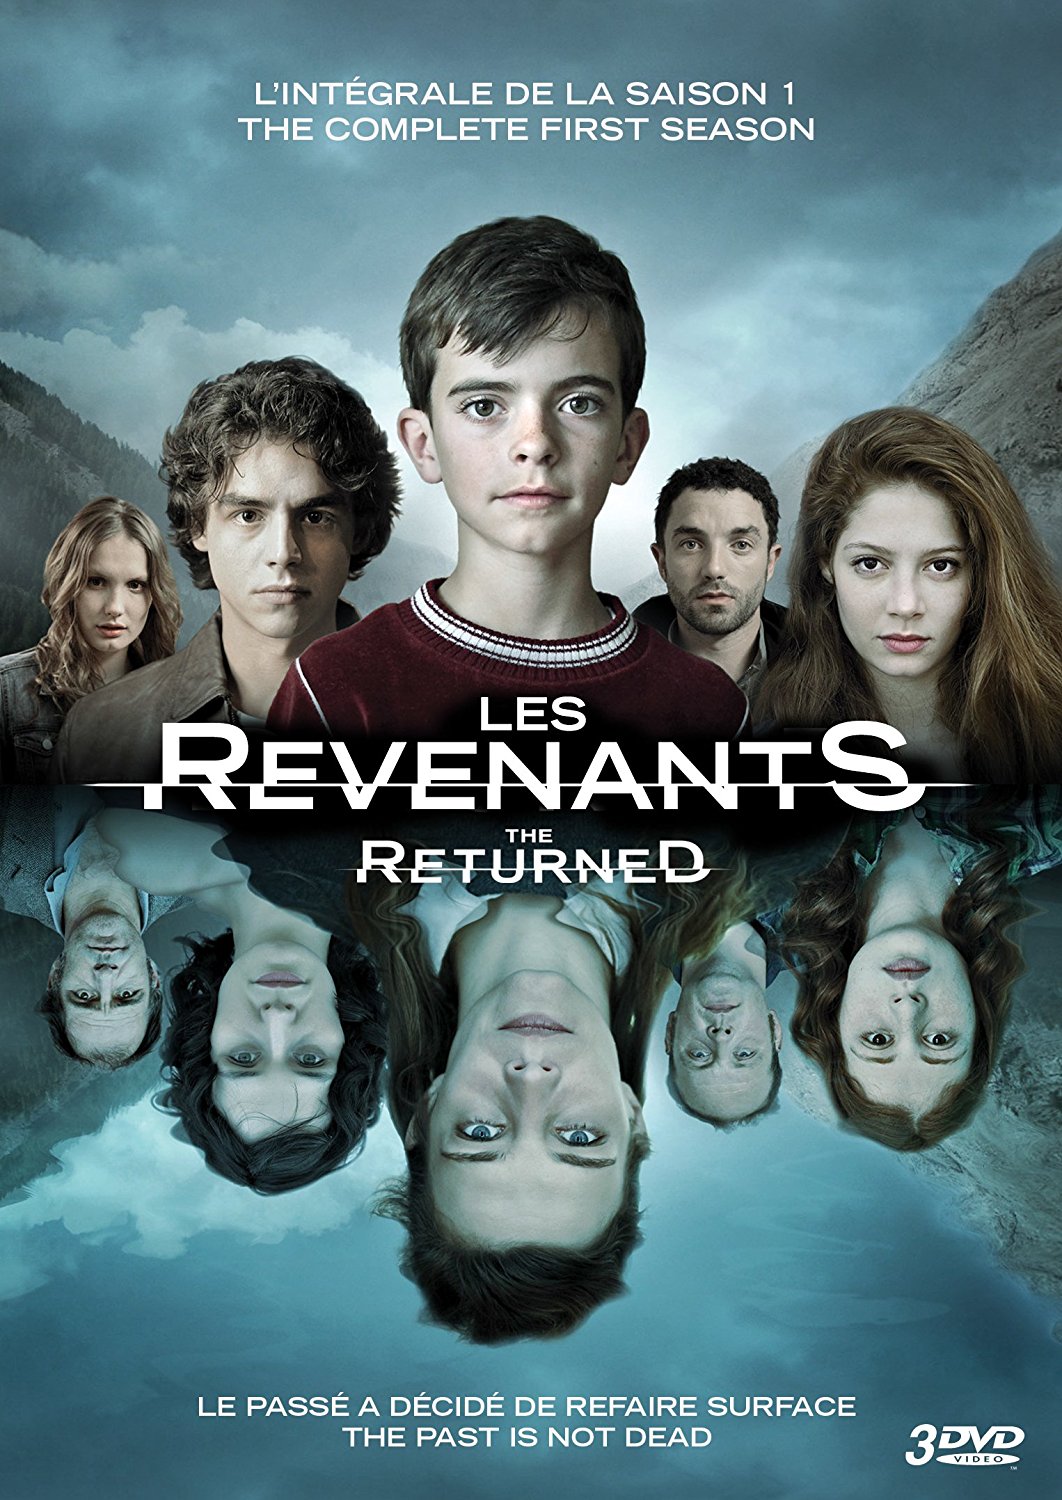 The Revenants #2